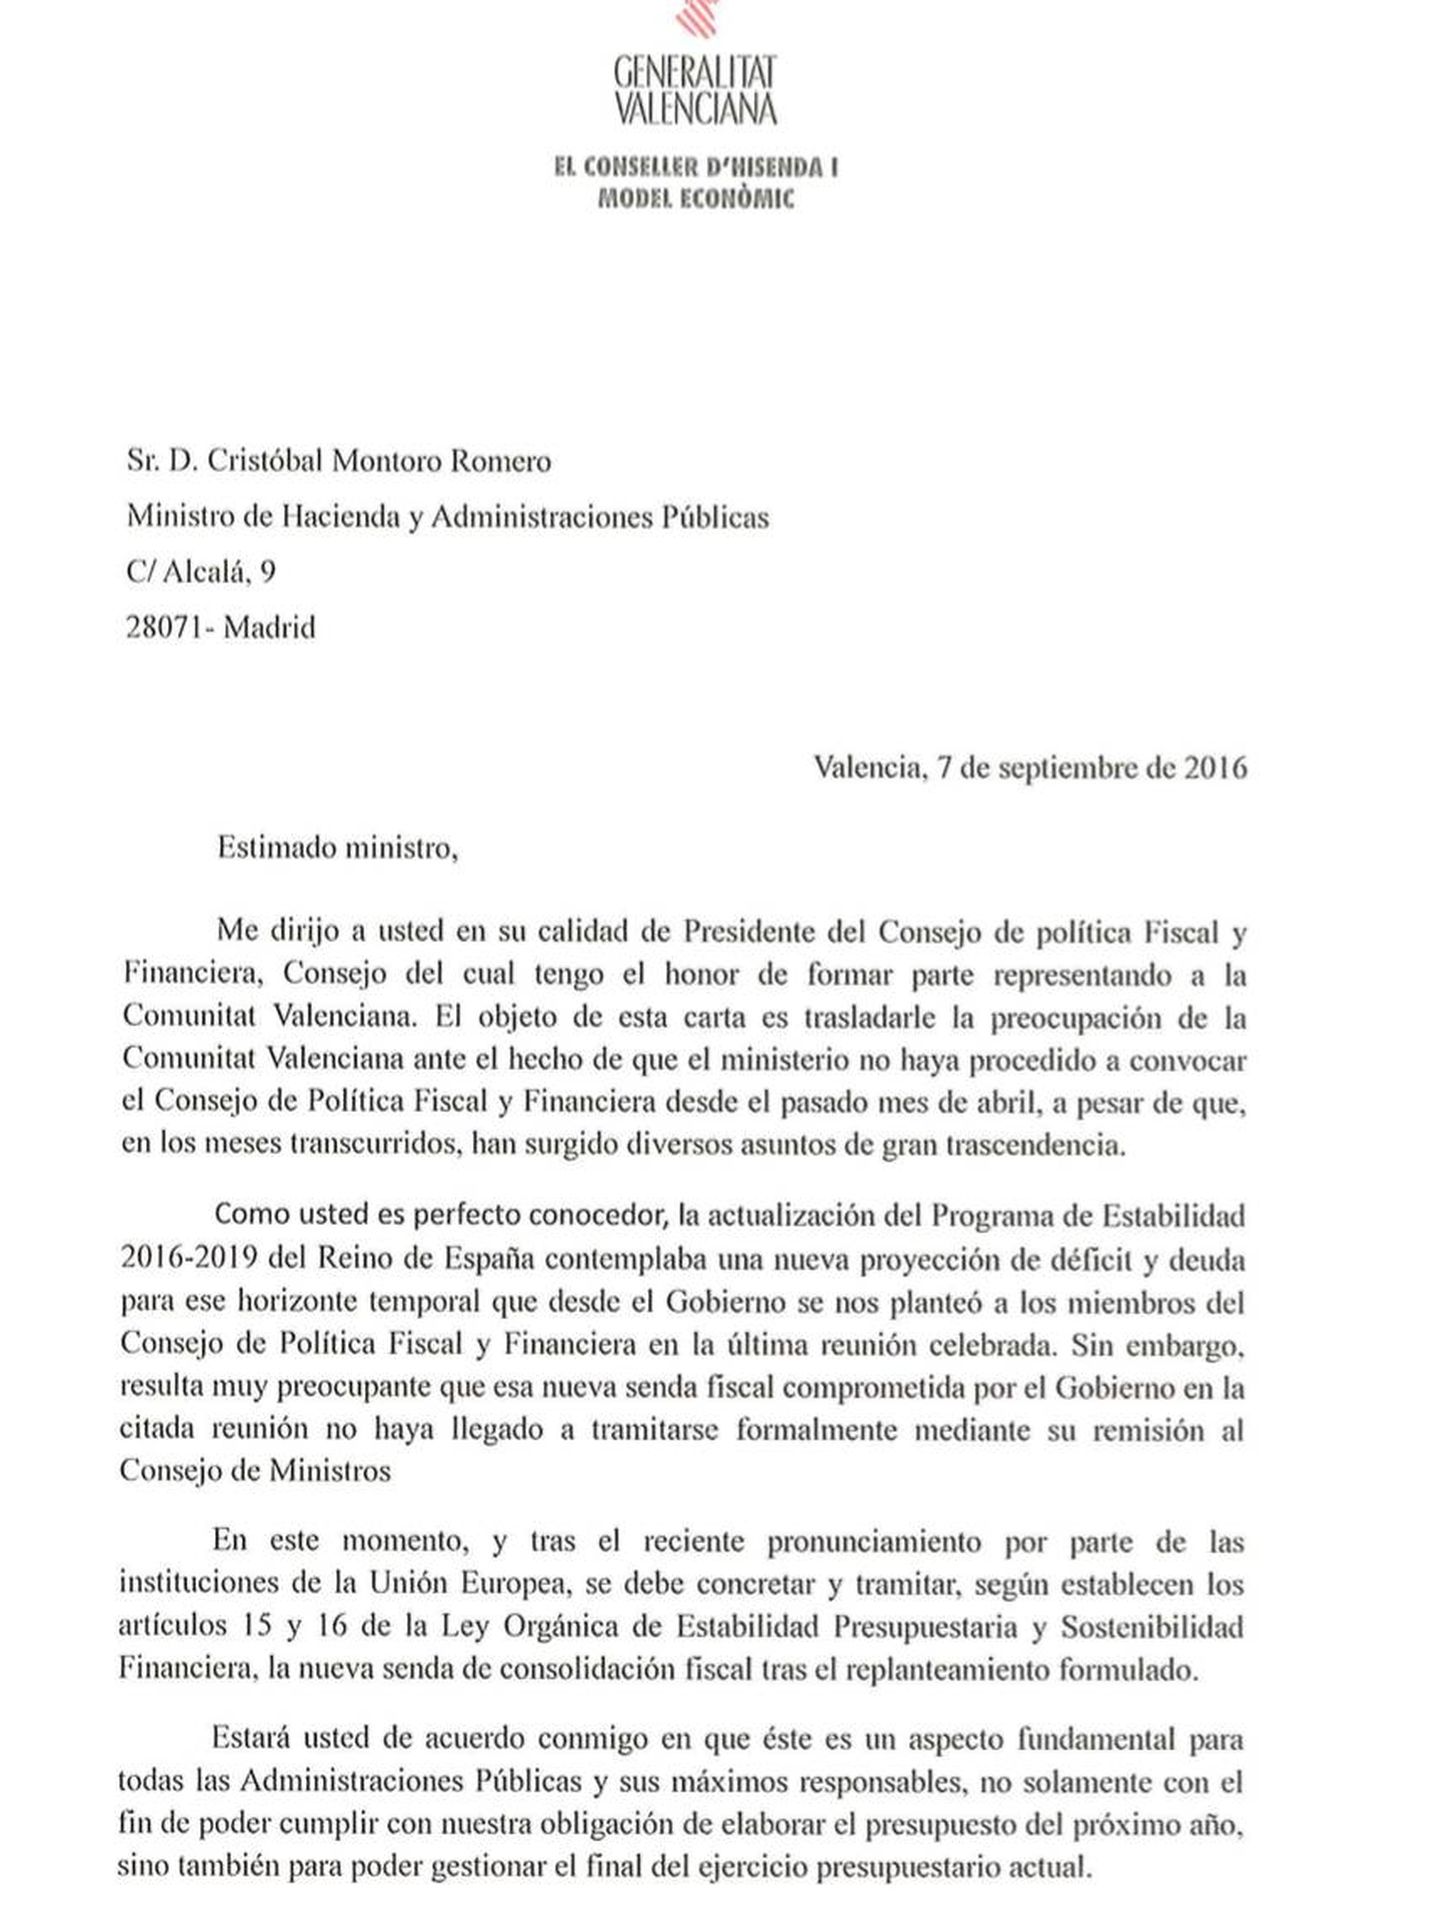 La carta del 'conseller' Vicent Soler a Cristóbal Montoro.